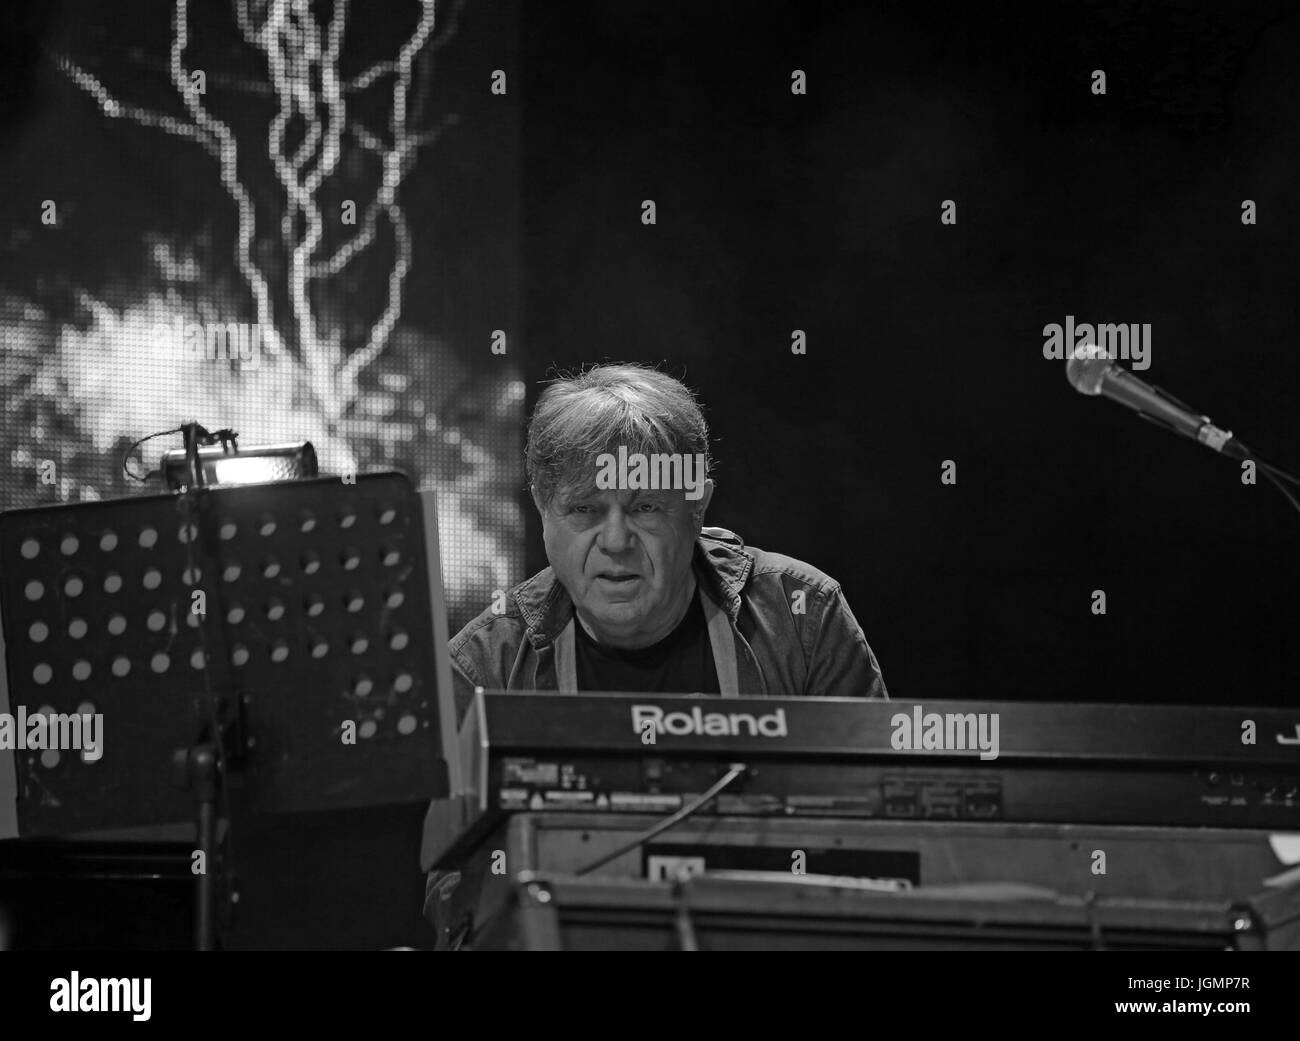 Bassano del Grappa, VI, Italia - 29 Aprile 2017: Carletti Beppe suona il pianoforte di nomadi un italiano famoso gruppo musicale durante un concerto dal vivo Foto Stock